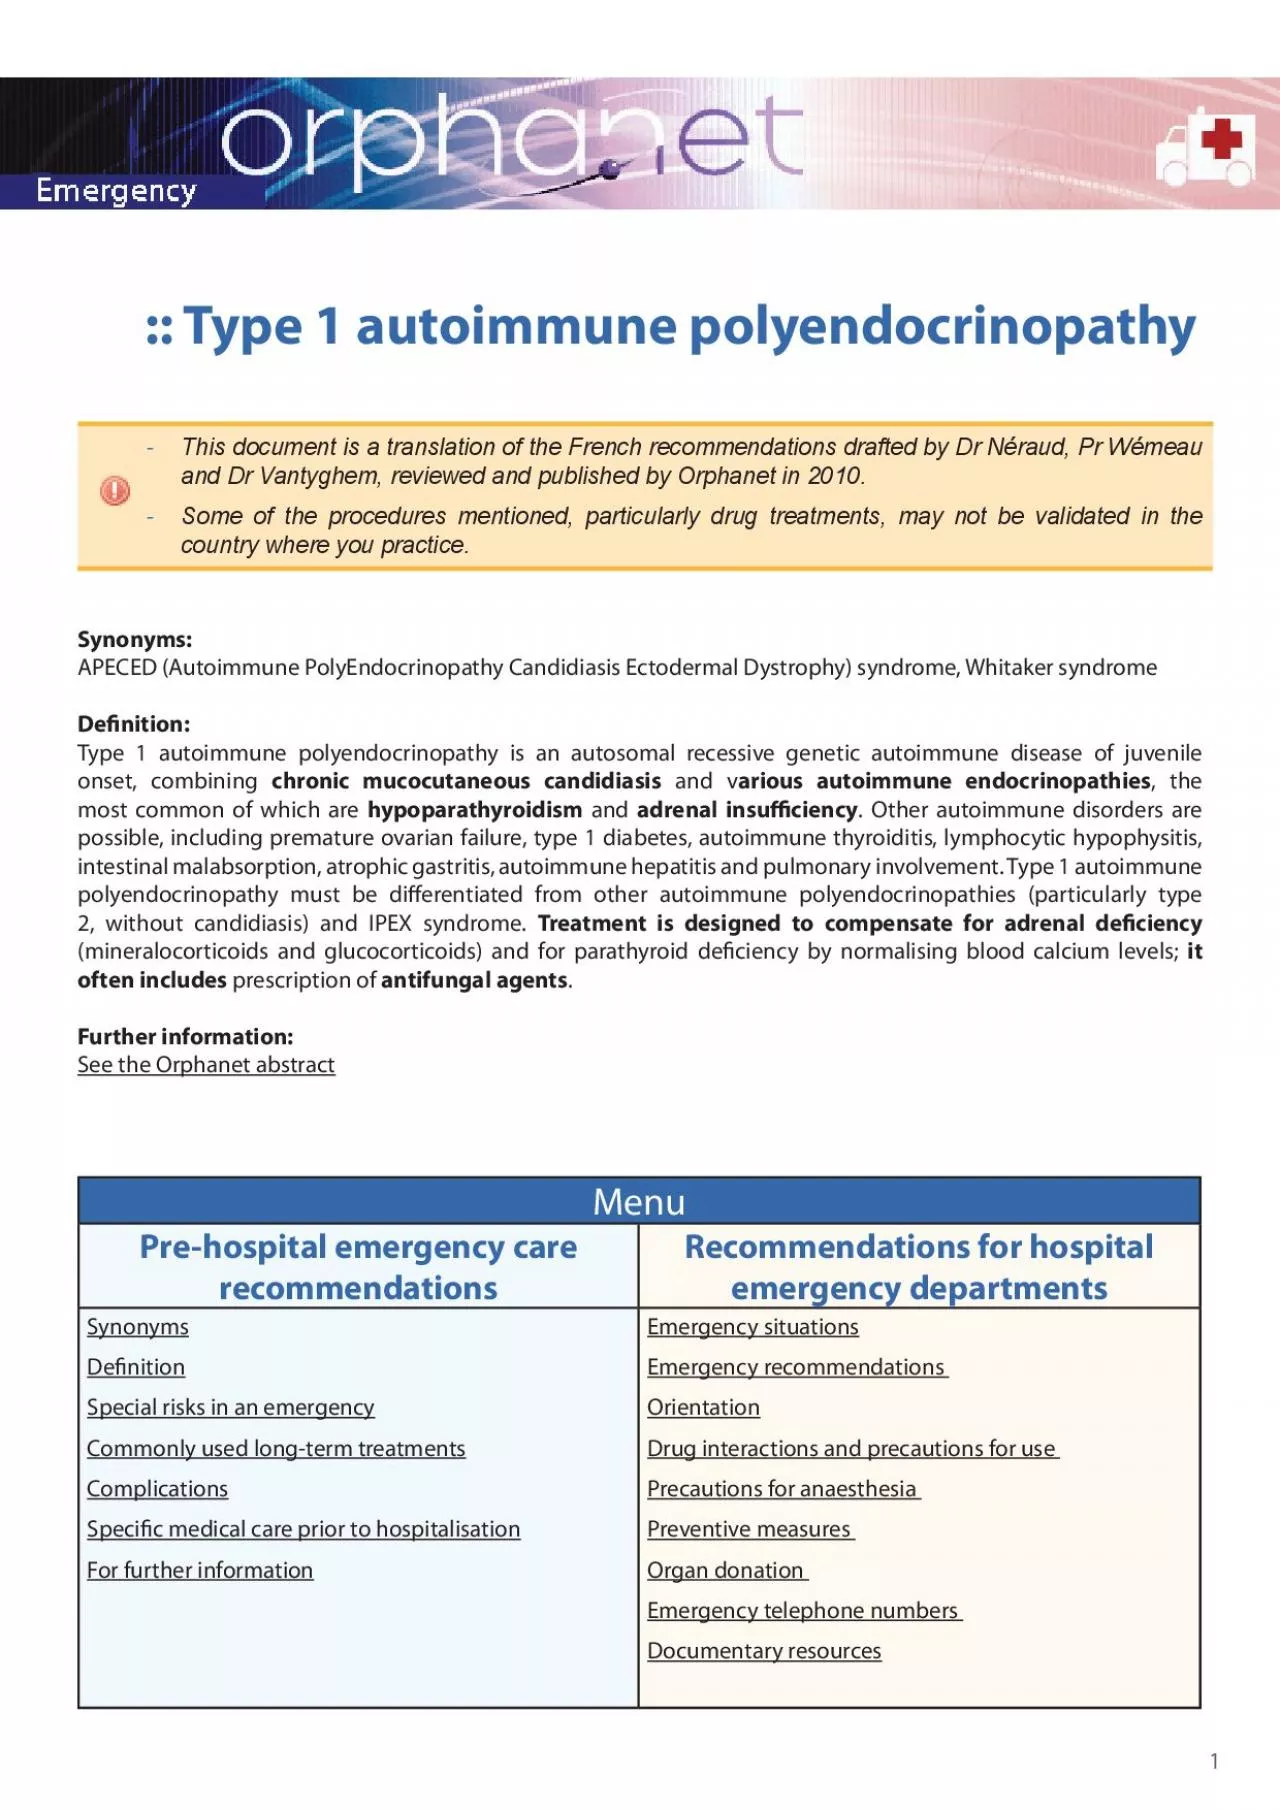 Type 1 autoimmune polyendocrinopathy